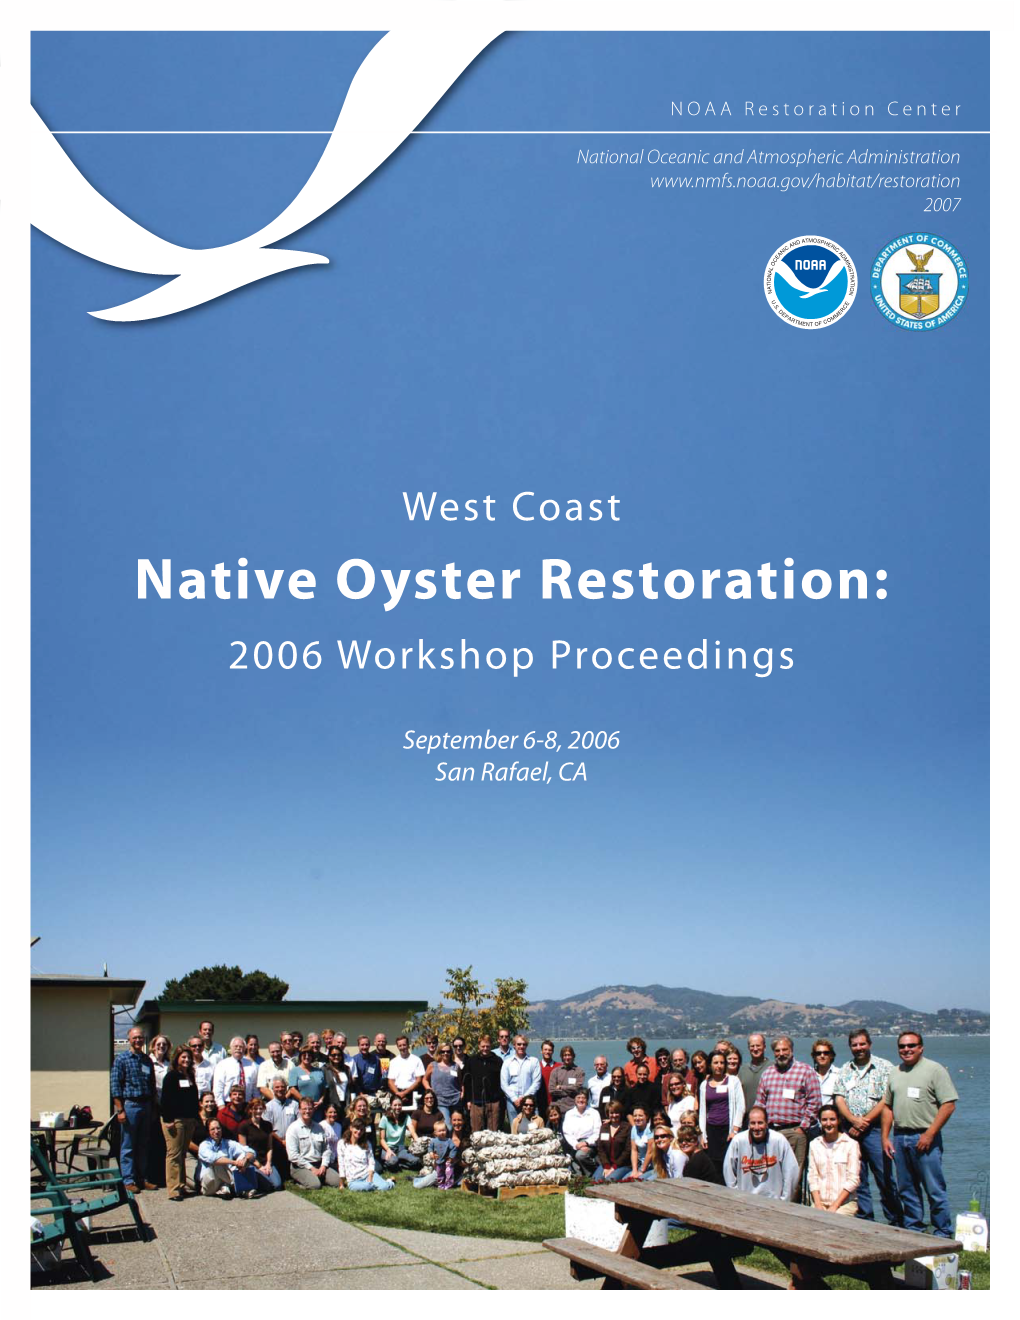 Native Oyster Restoration: 2006 Workshop Proceedings